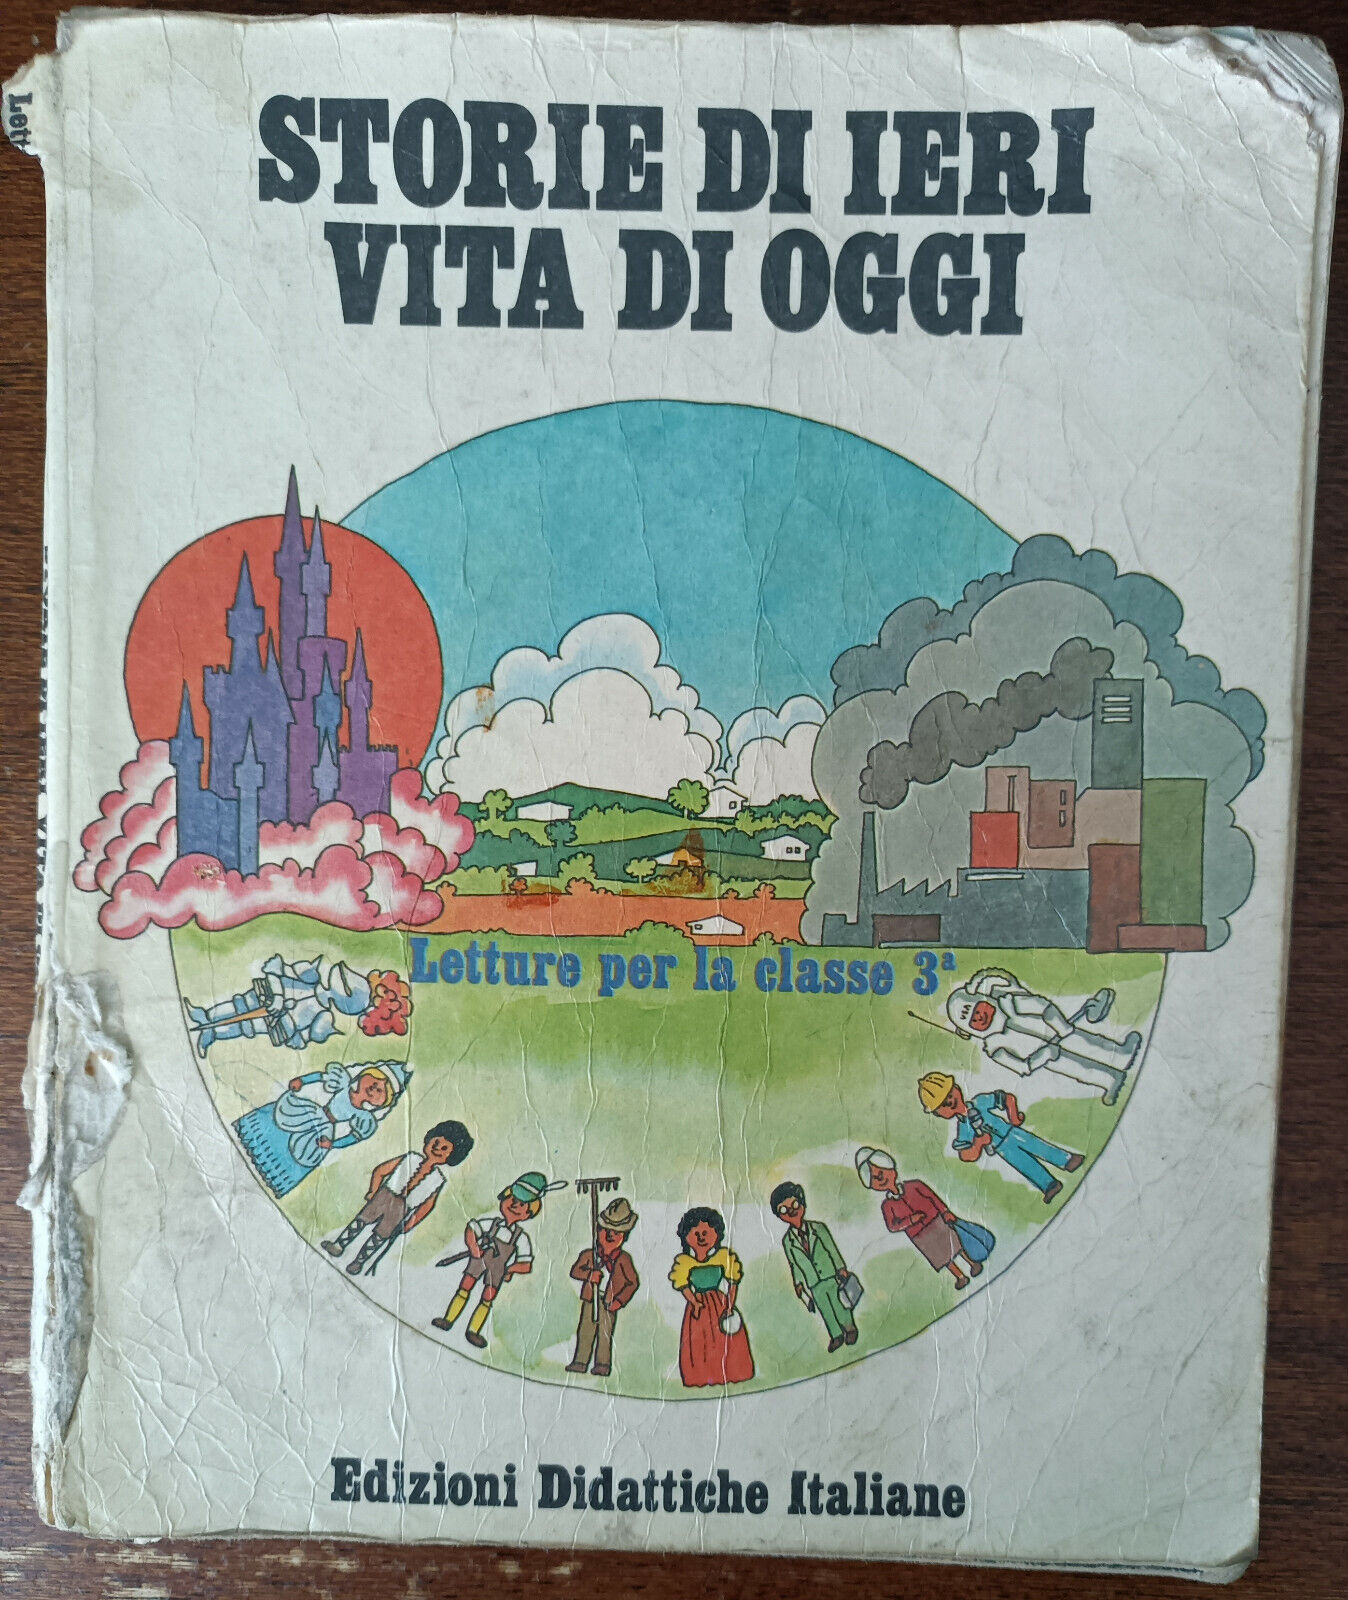 Storie di ieri vita di oggi - R. Paccari? - edizioni didattiche italiane, 1975-A